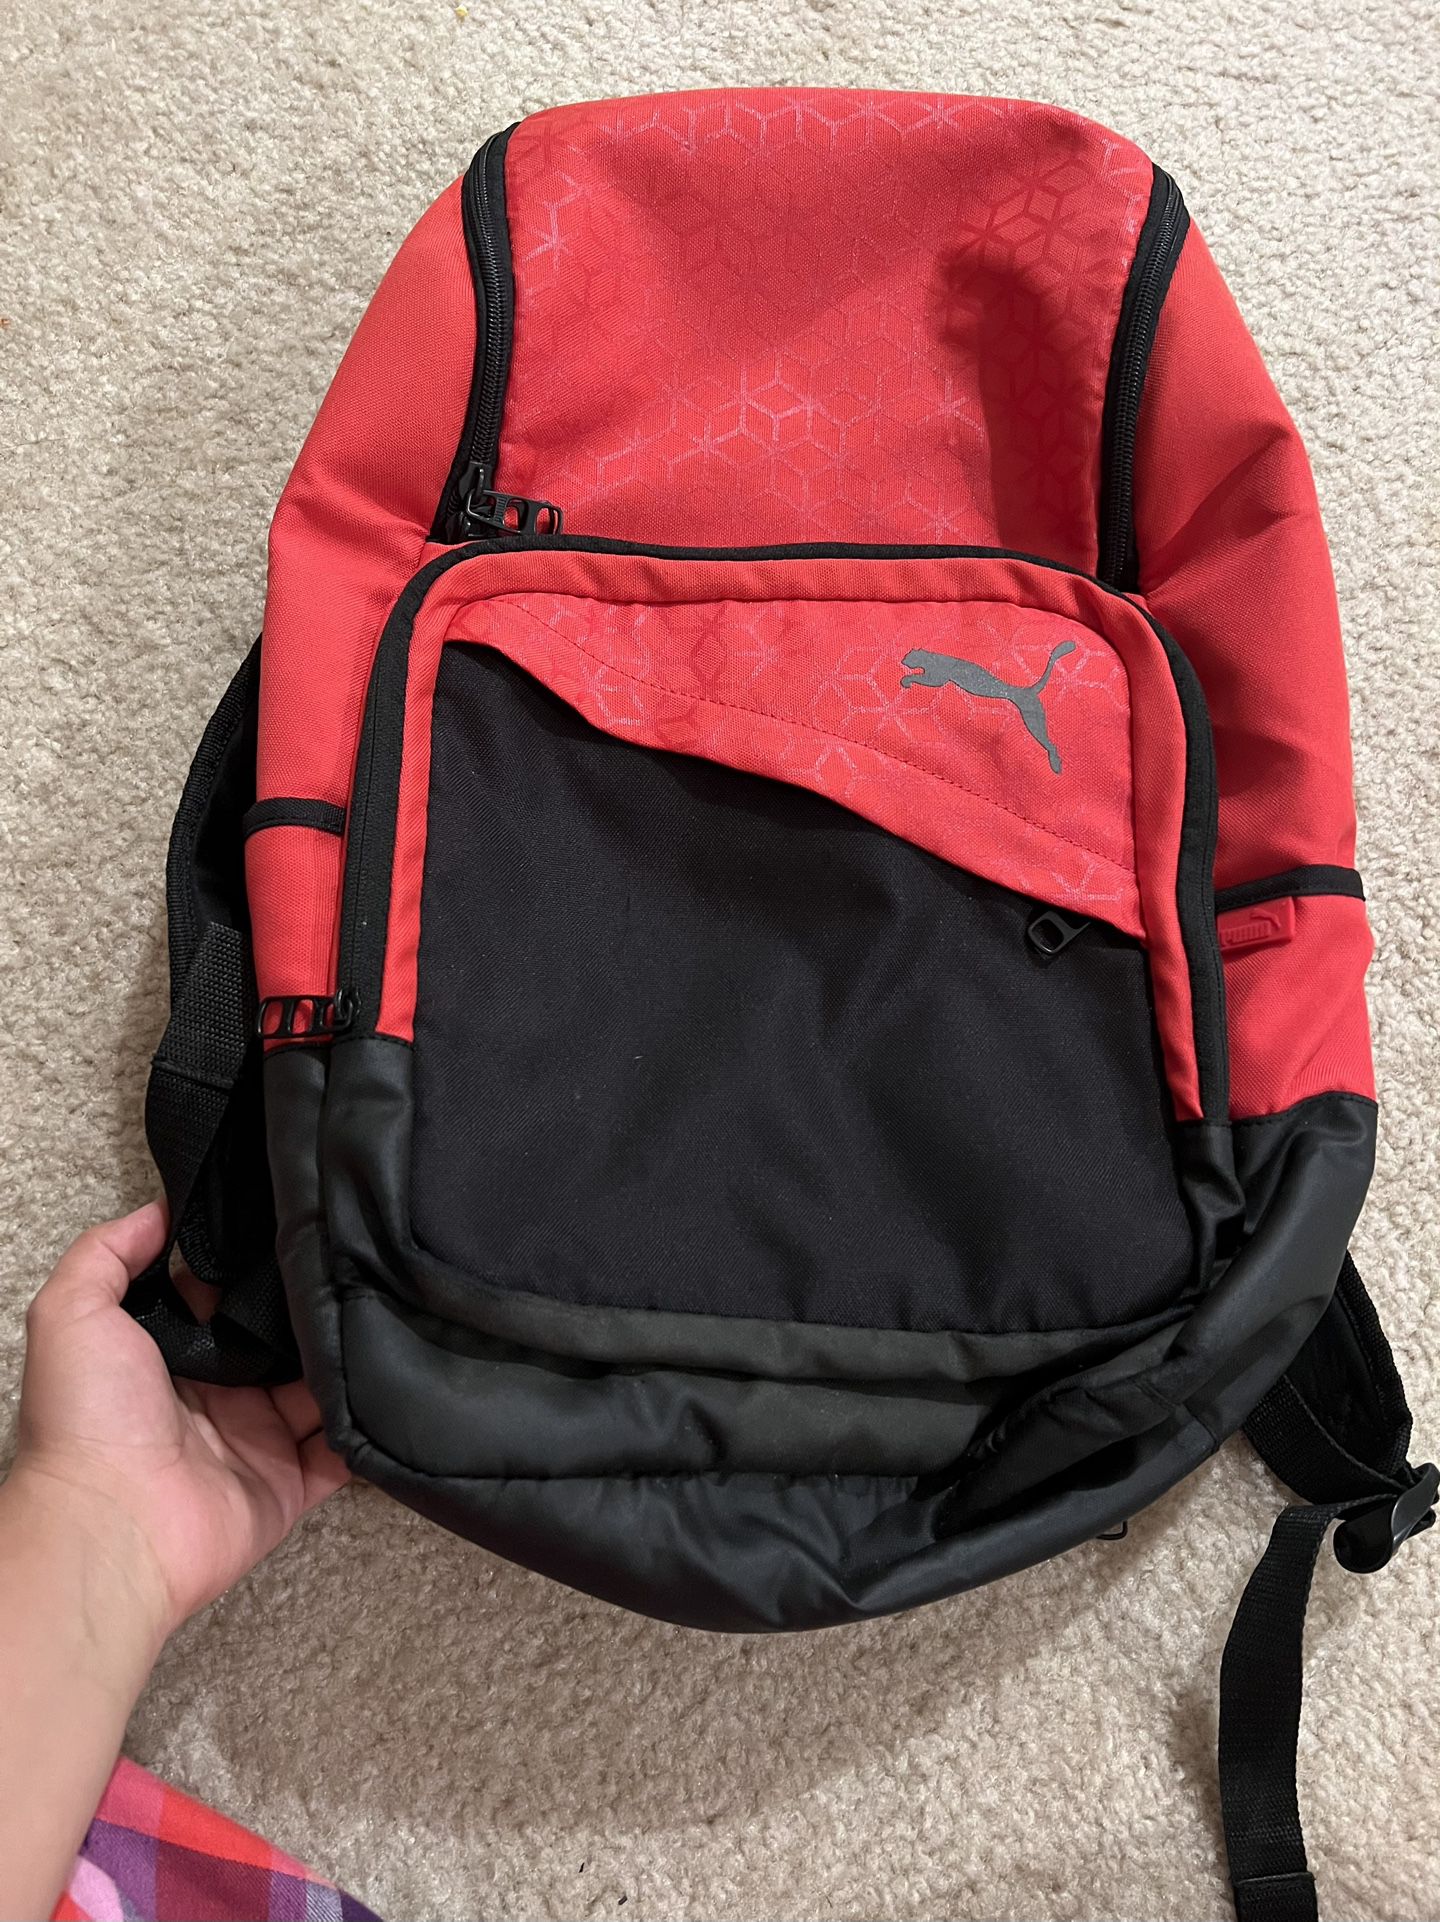 Puma Backpack Red 